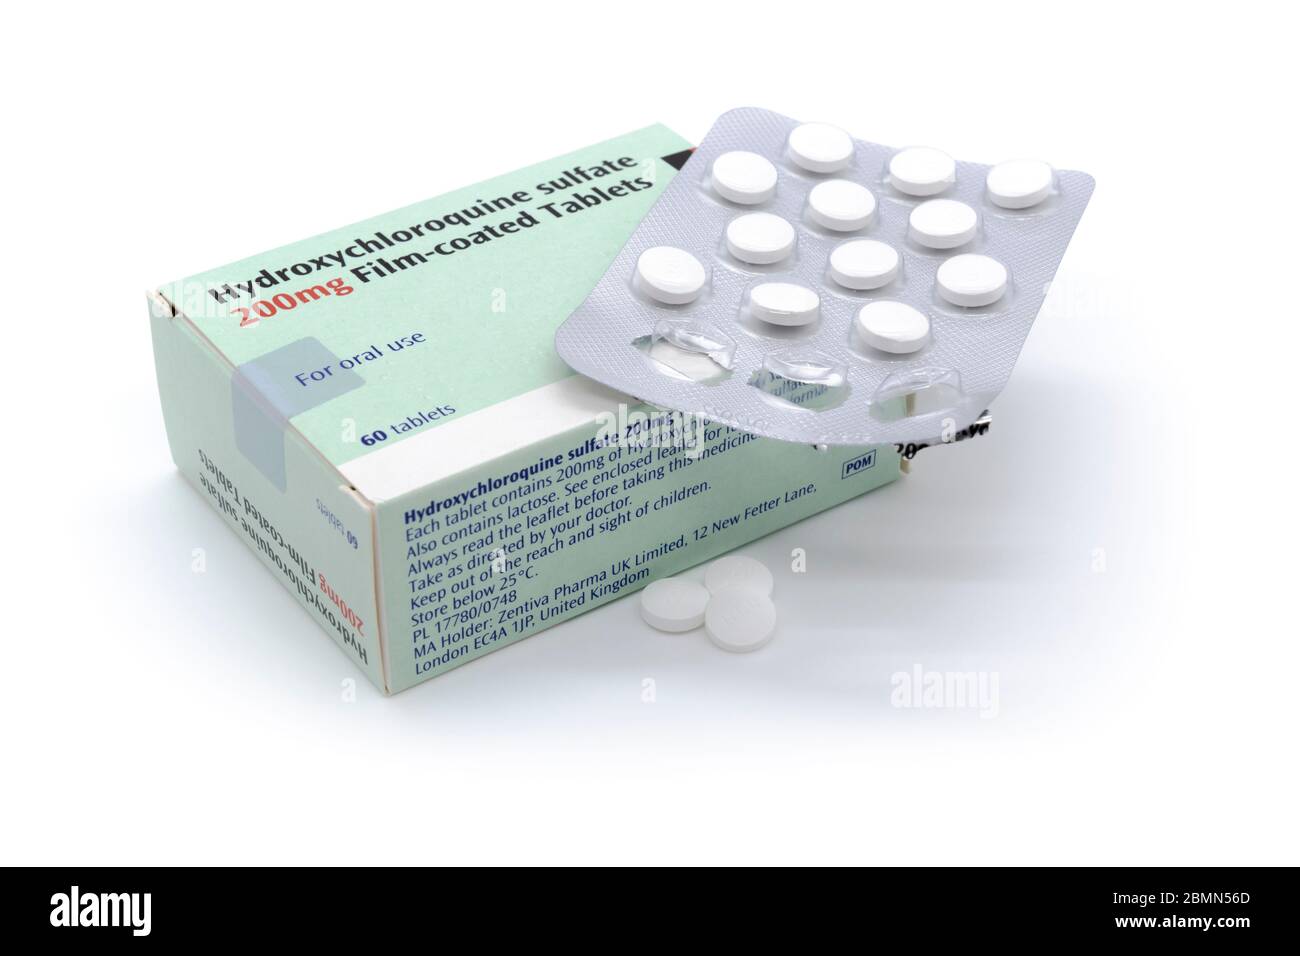 Tabletas de hidroxicloroquina 200mg Tabletas de hidroxicloroquina anteriormente Tabletas de Plaquenil Posible plan de tratamiento COVID19 Foto de stock